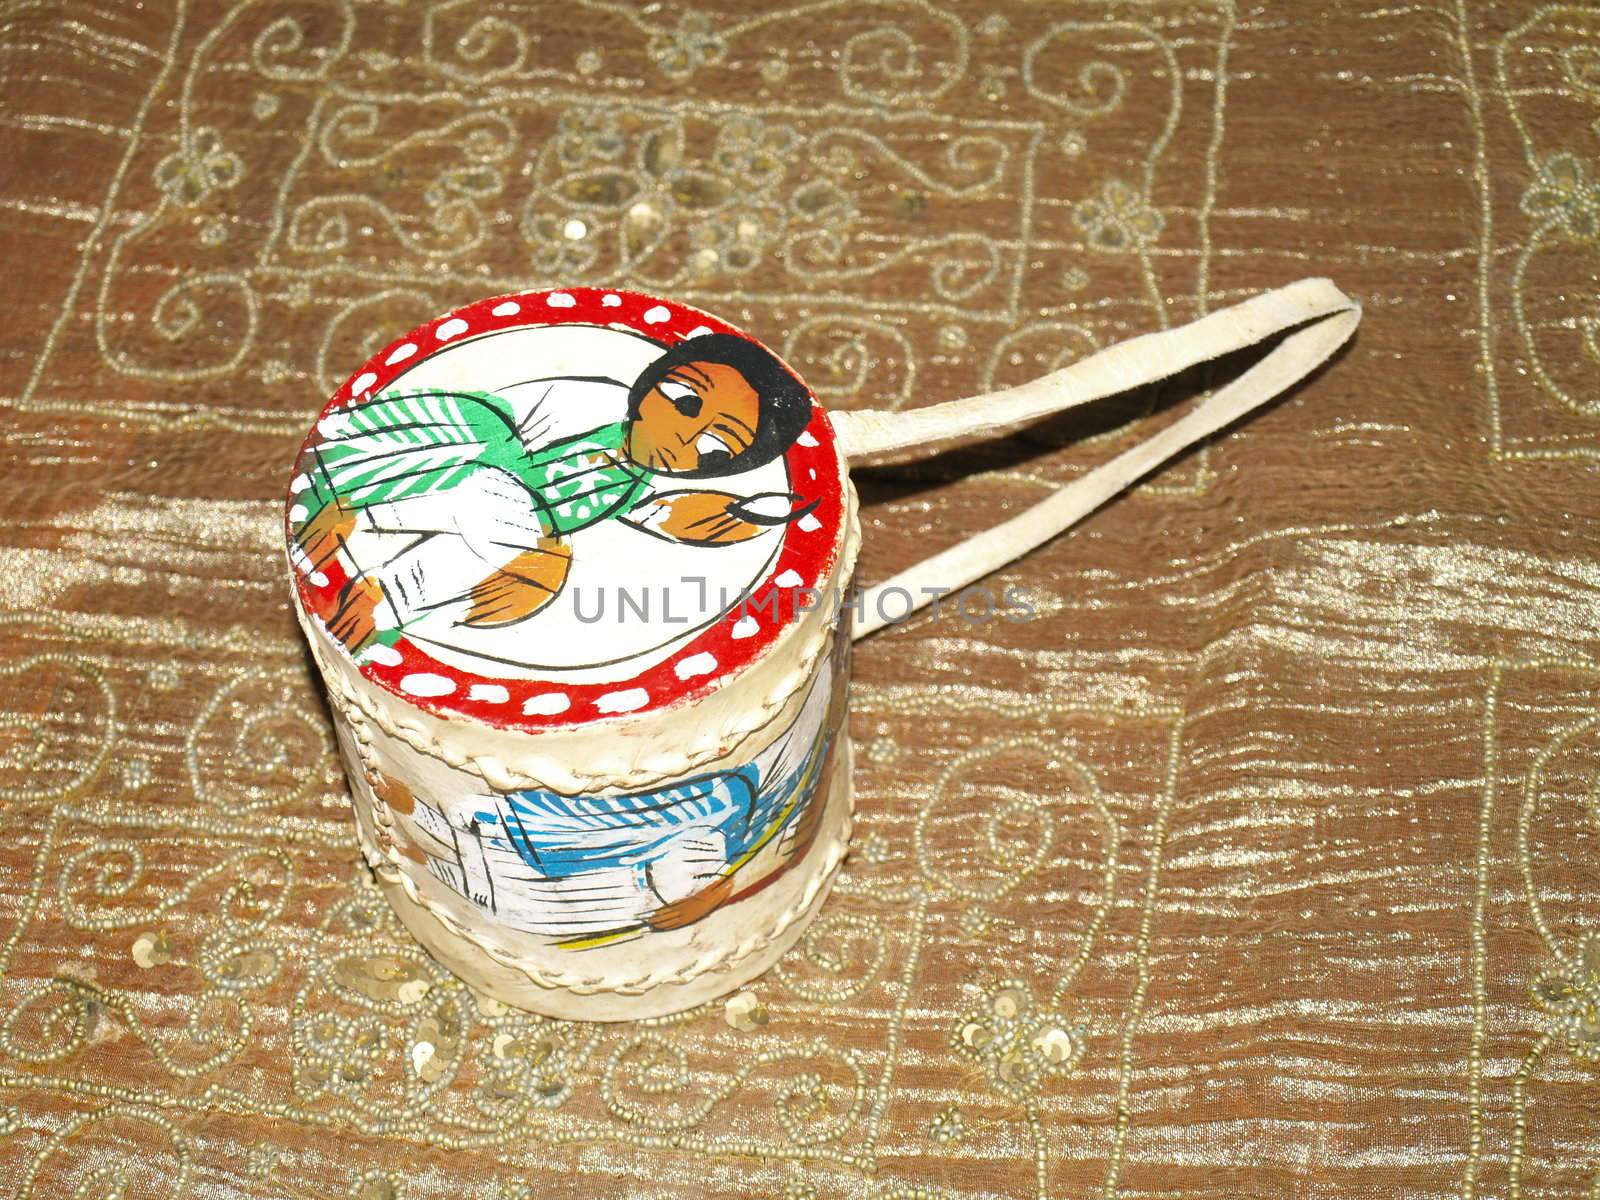 small ethiopian drum